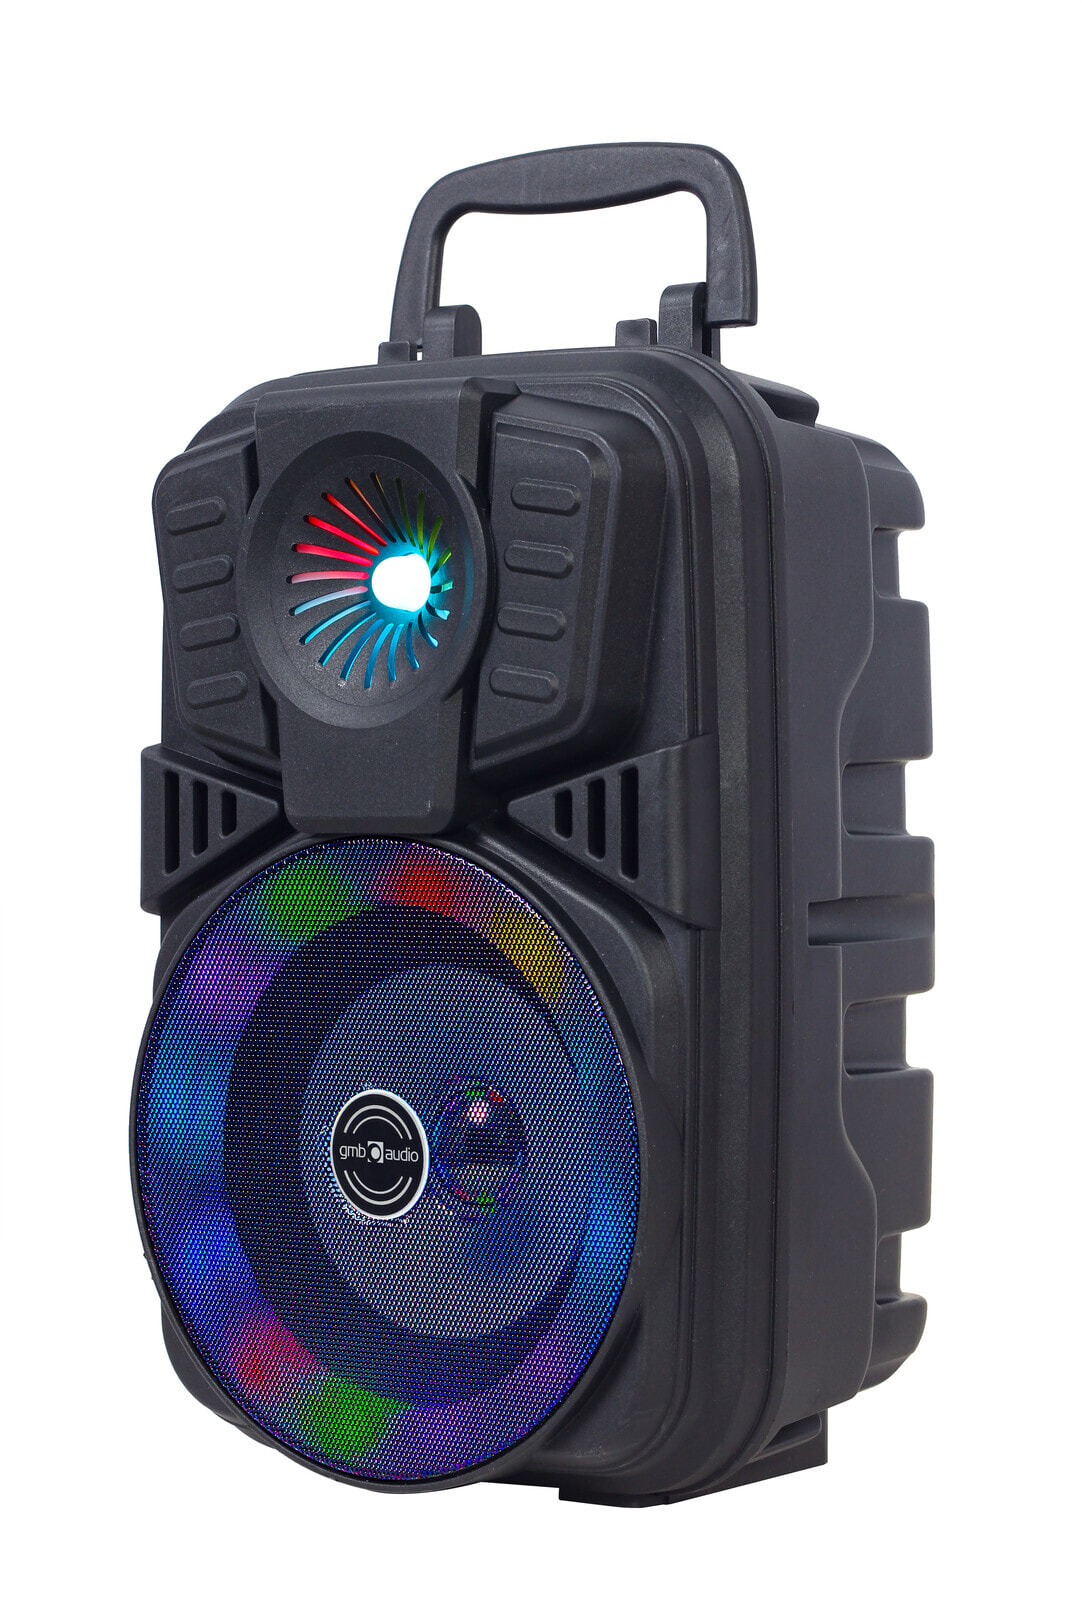 Gembiird Bluetooth tragbarer Party Lautsprecher - SPK-BT-LED-01 - Speaker